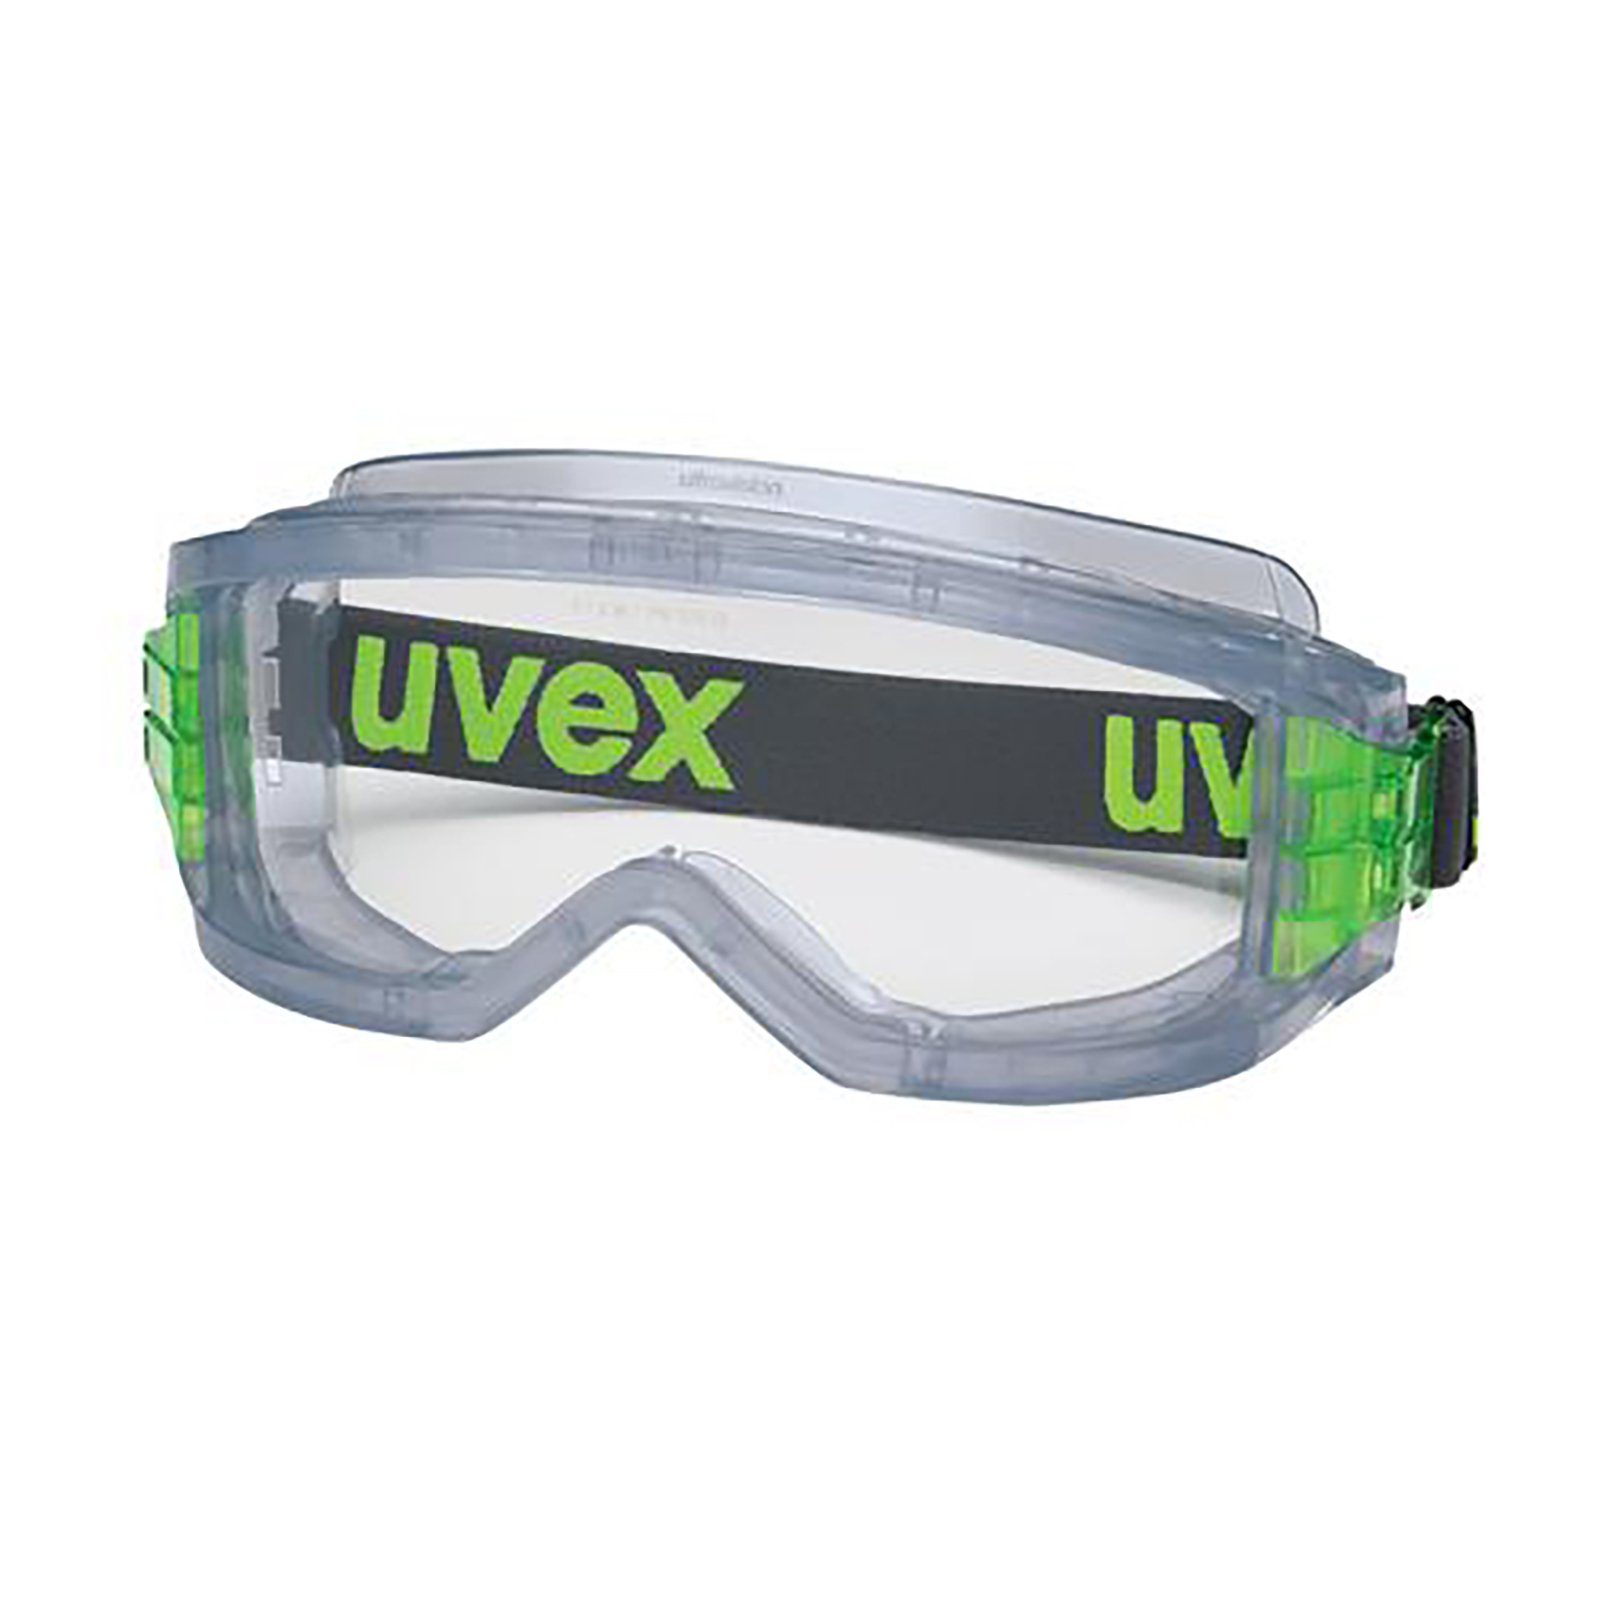 Uvex Arbeitsschutzbrille Vollsichtbrille ultravision 9301906